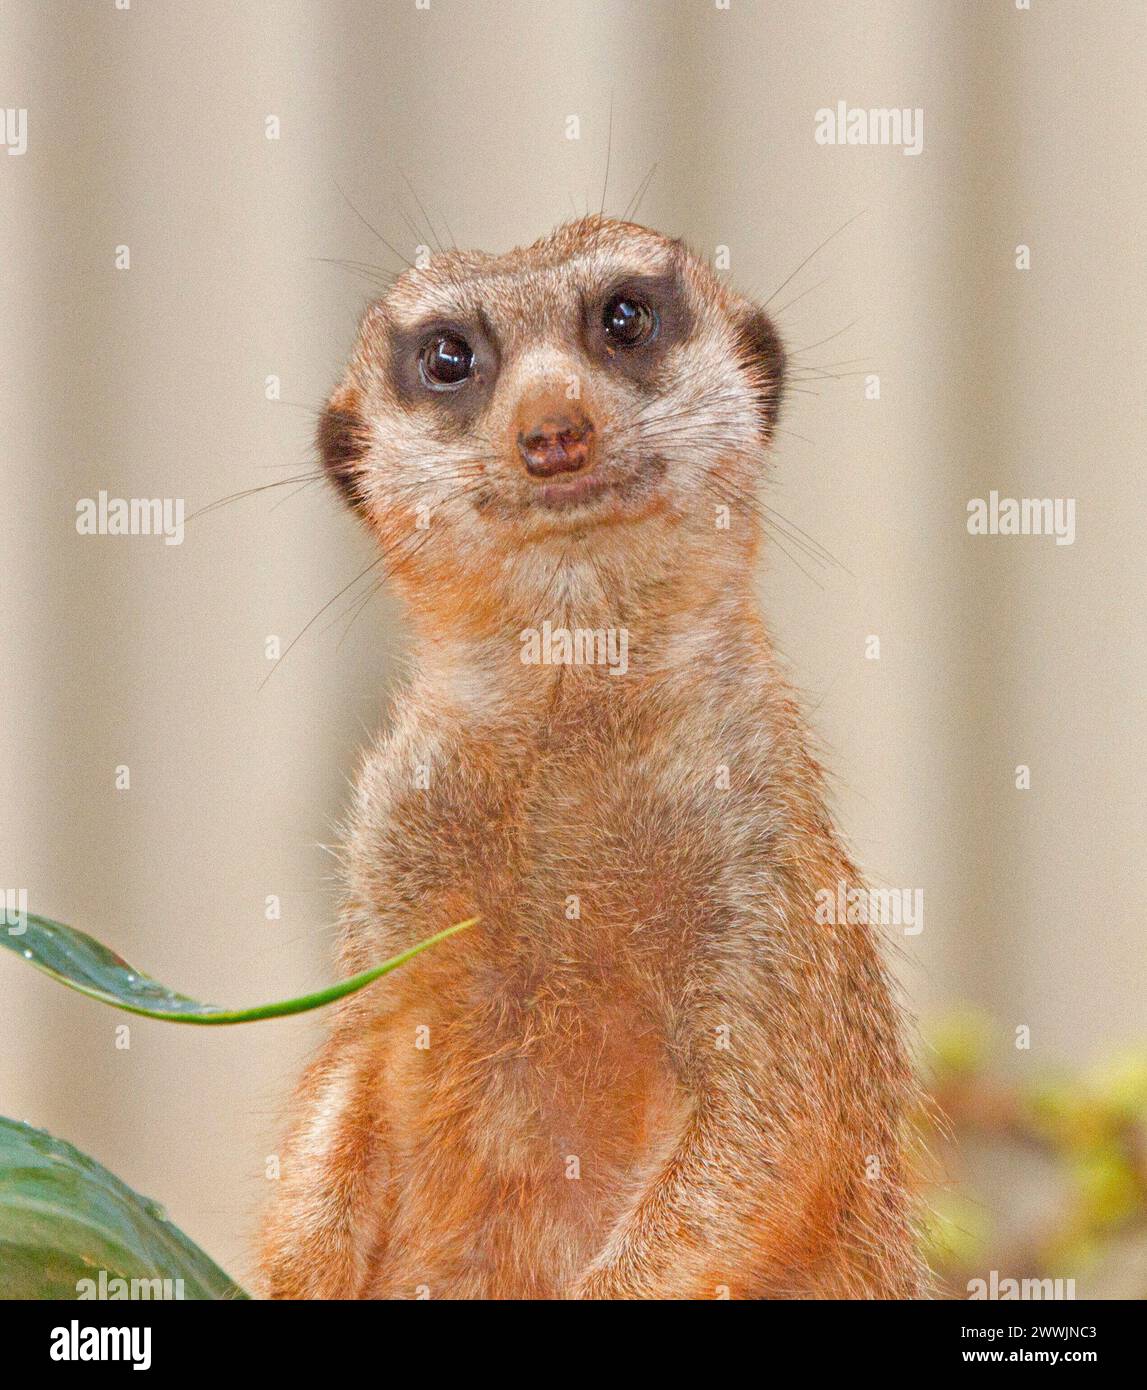 Portrait de suricate africaine, Suricata suricatta, haut du corps et visage de l'animal avec une expression perplexe regardant la caméra Banque D'Images